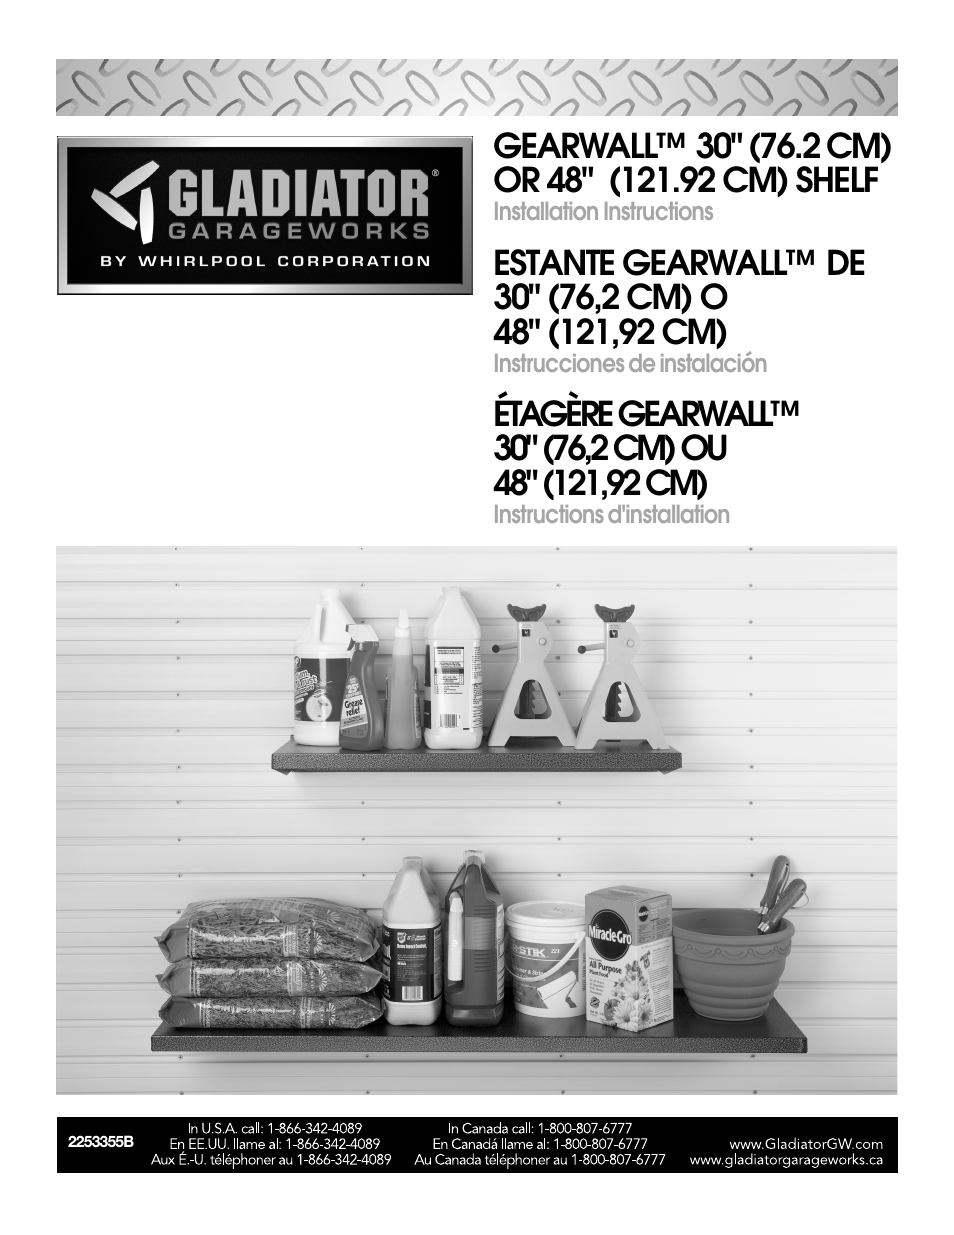 GAWA48SFRG 48 Gearloft Shelf